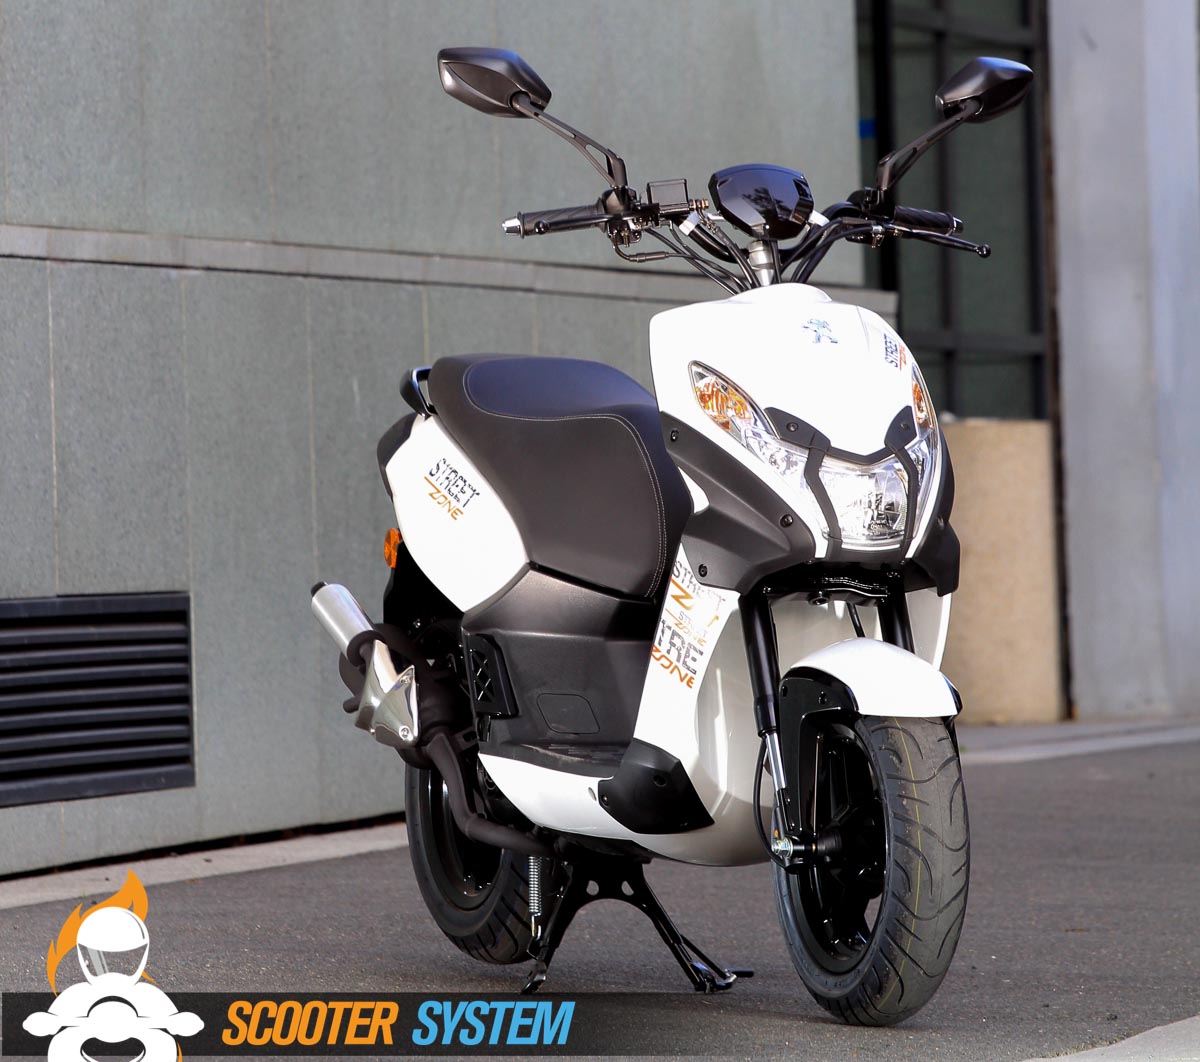 Le scooter est d'ores et déjà disponible chez les concessionnaires Peugeot